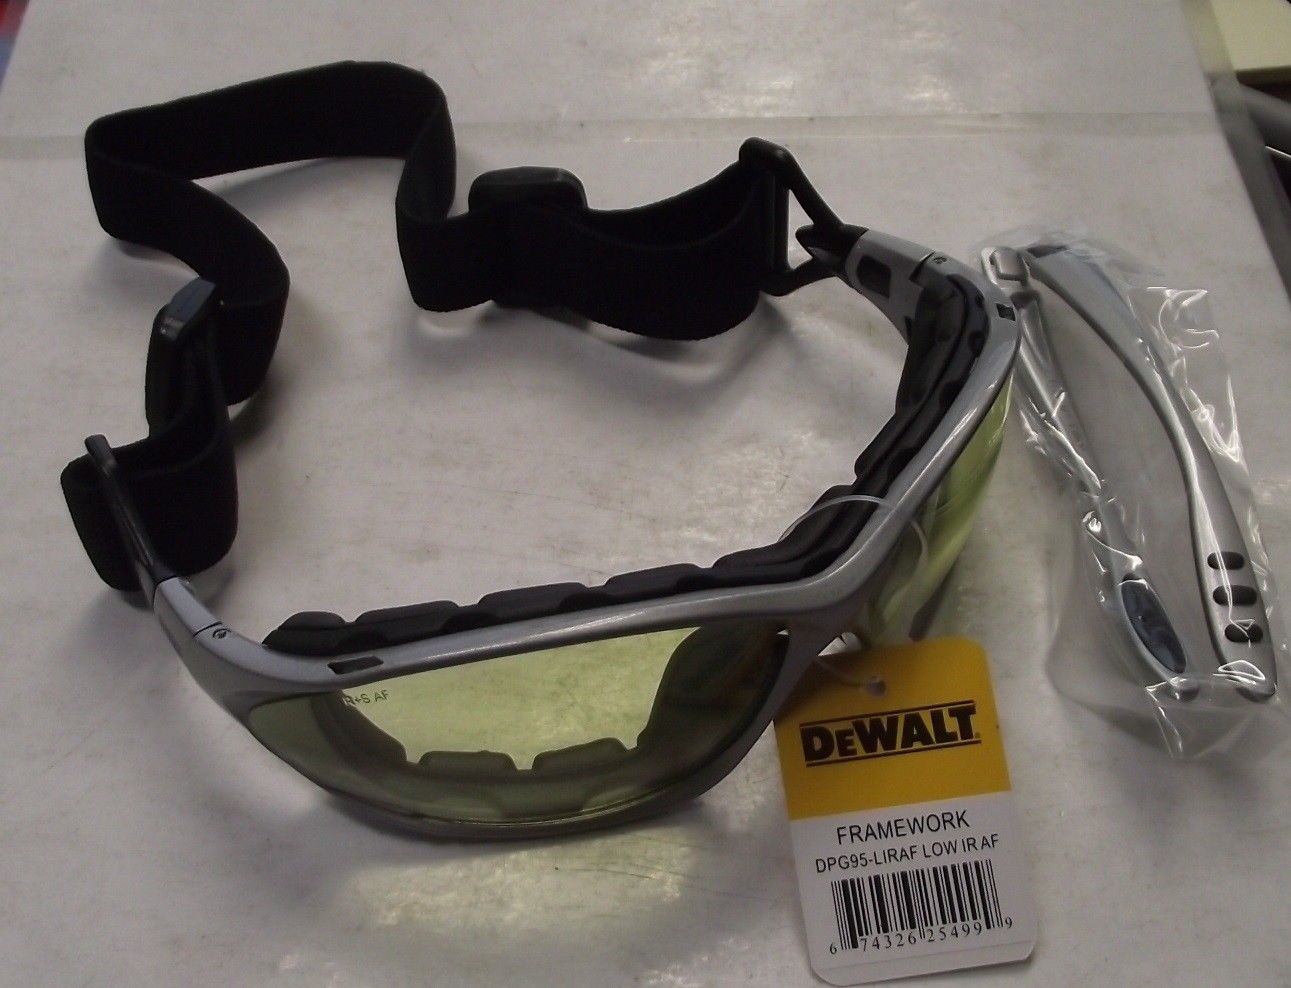 DEWALT DPG95-LIRAF FrameWork Safety Glasses With Low IR Anti-Fog Lens